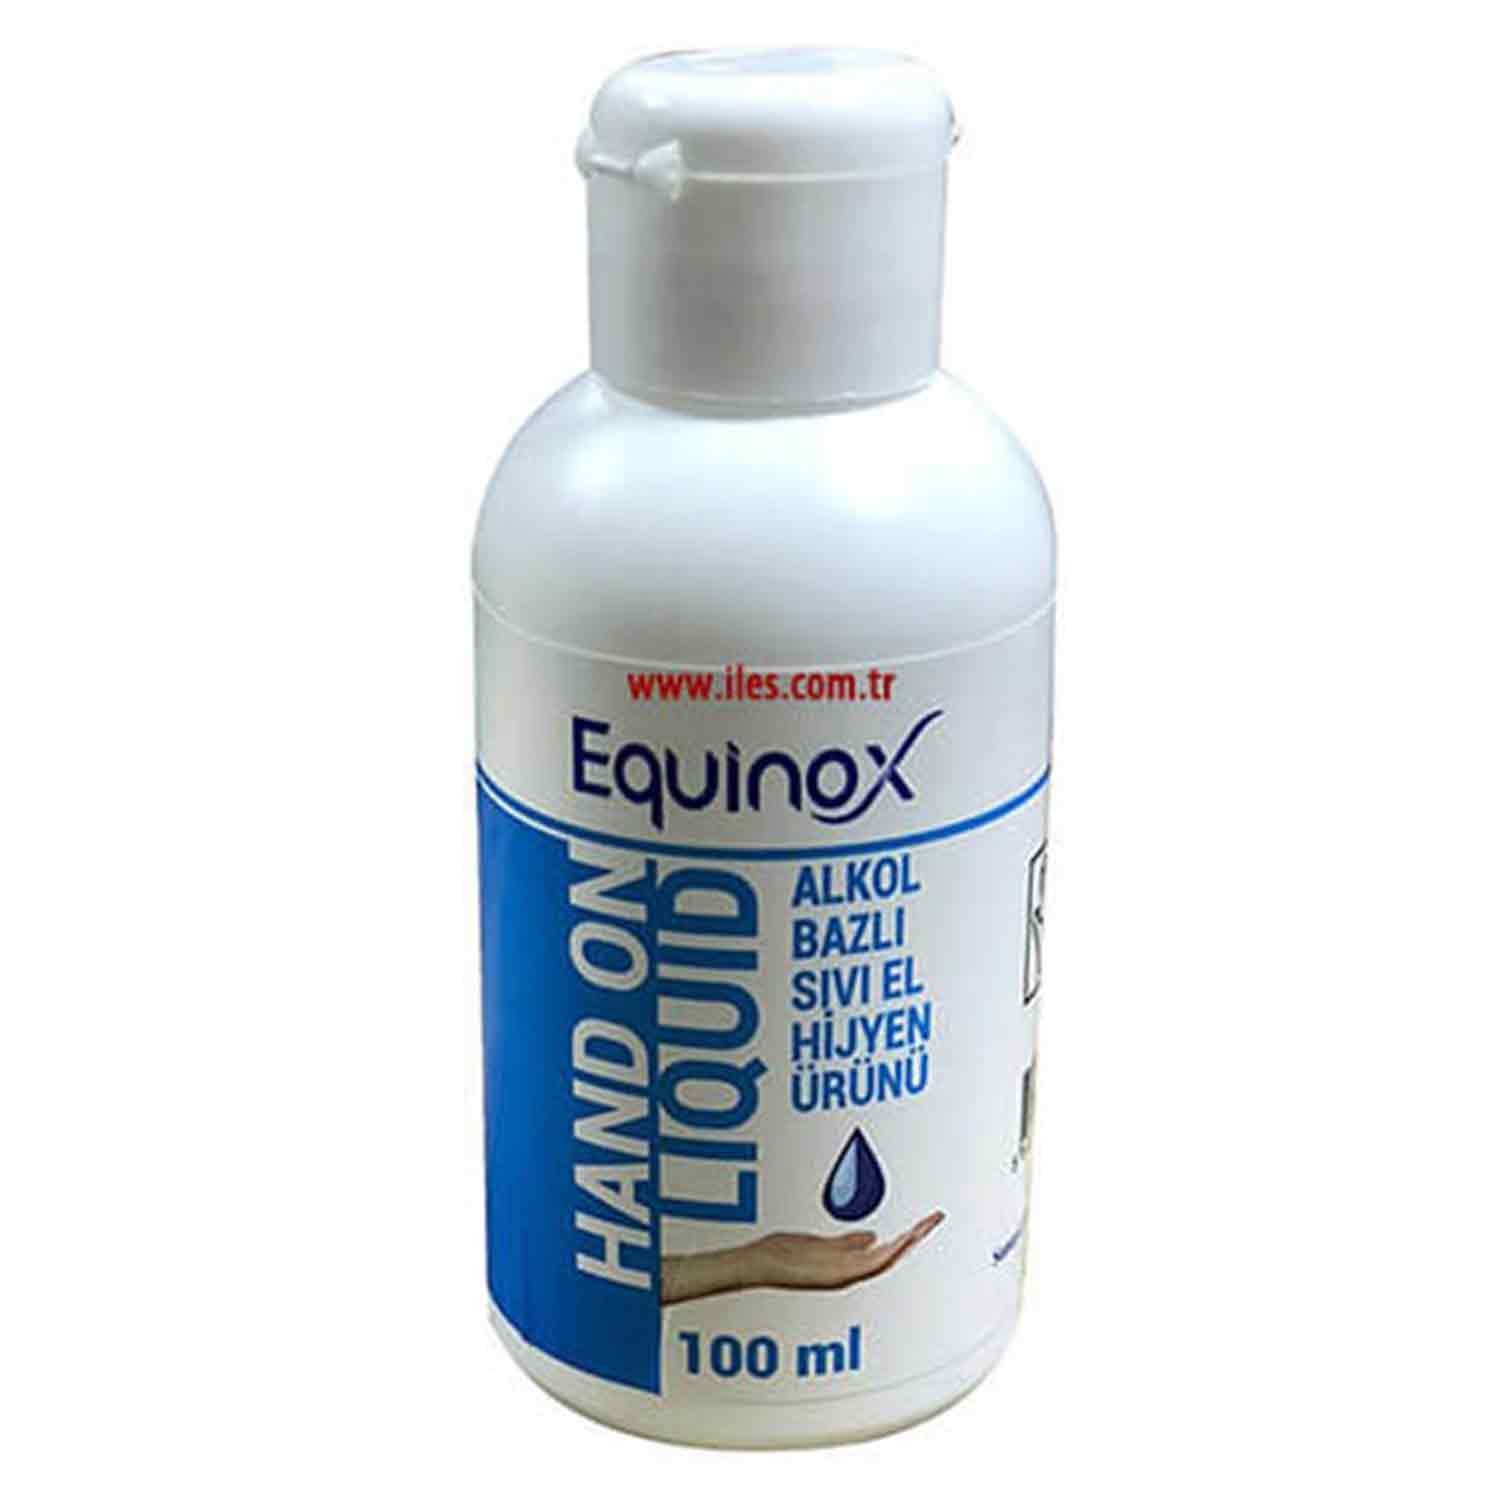 Equinox Hand On El Dezenfektanı, El Hijyeni Ürünü, Sıvı 100 ml | iles.com.tr